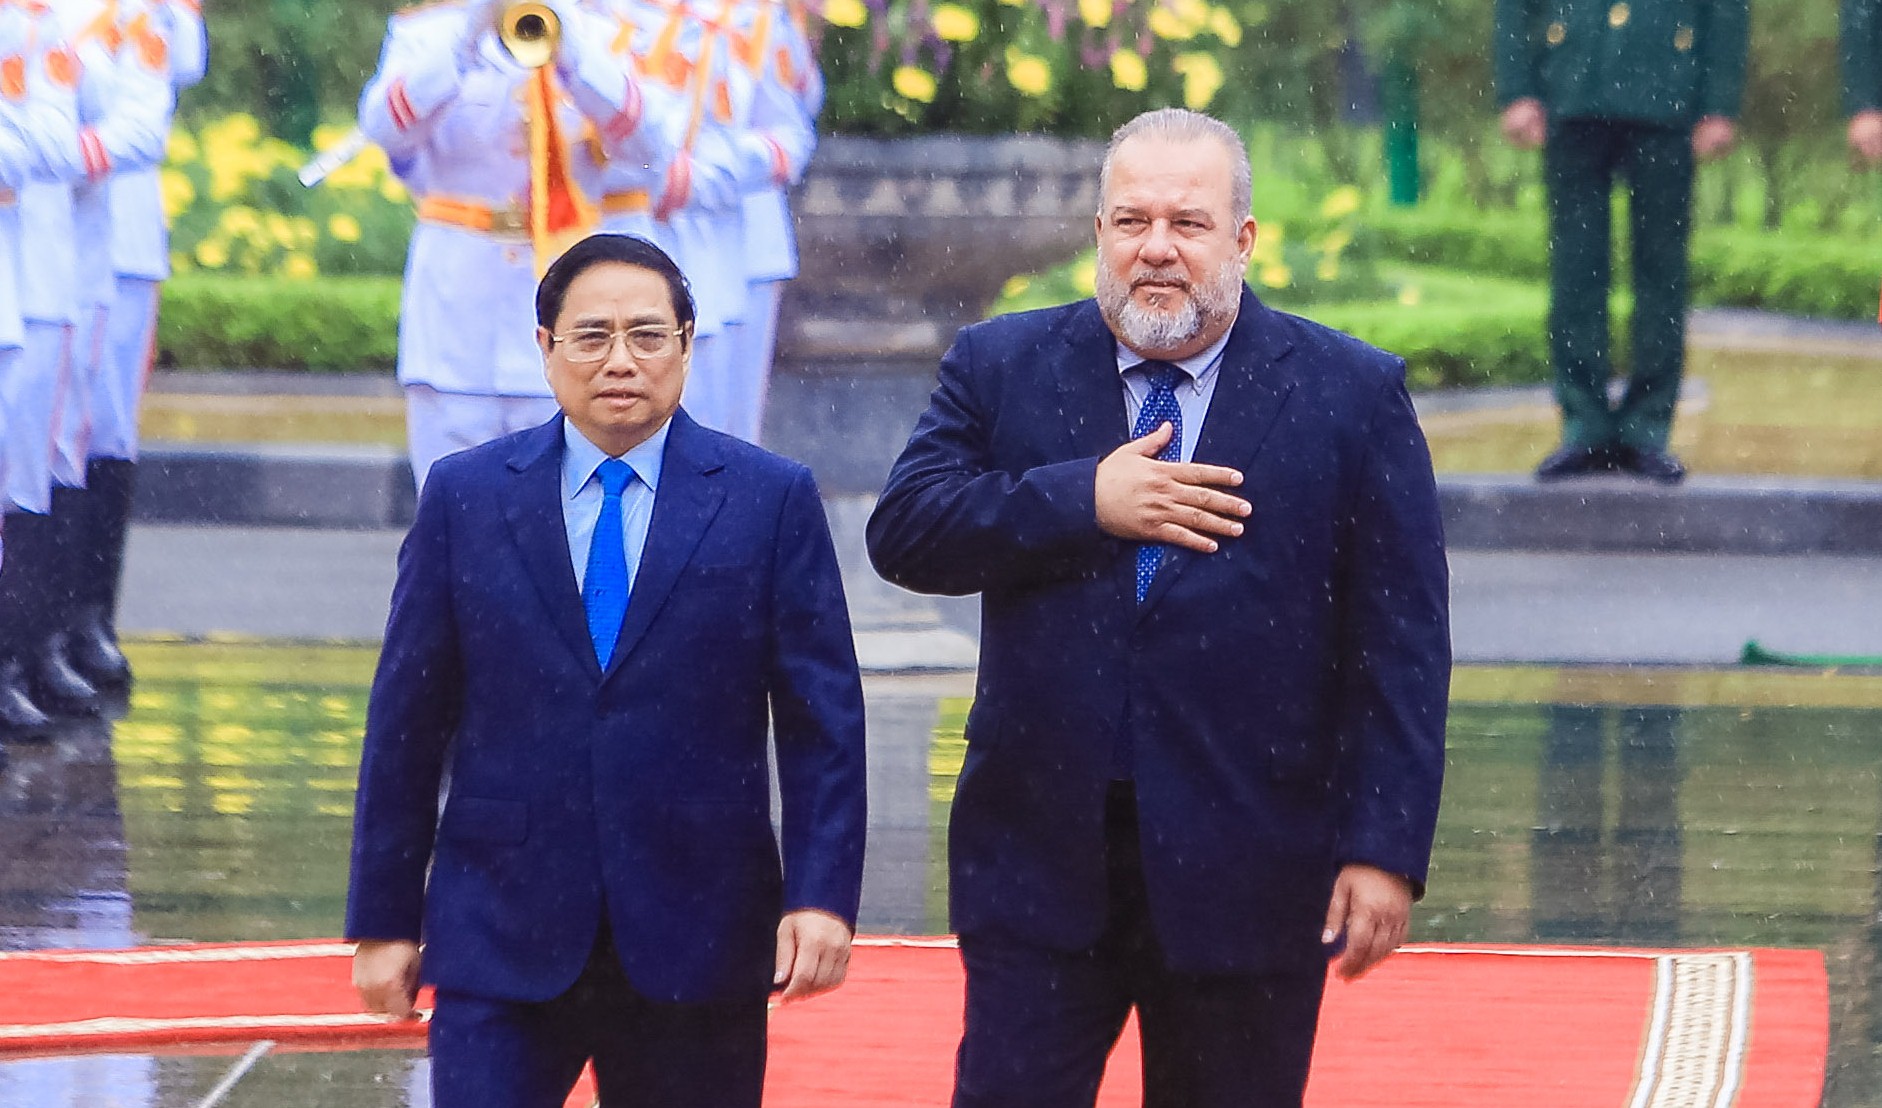 Thủ tướng Phạm Minh Chính đón Thủ tướng Cuba lần đầu thăm chính thức Việt Nam - Ảnh 11.